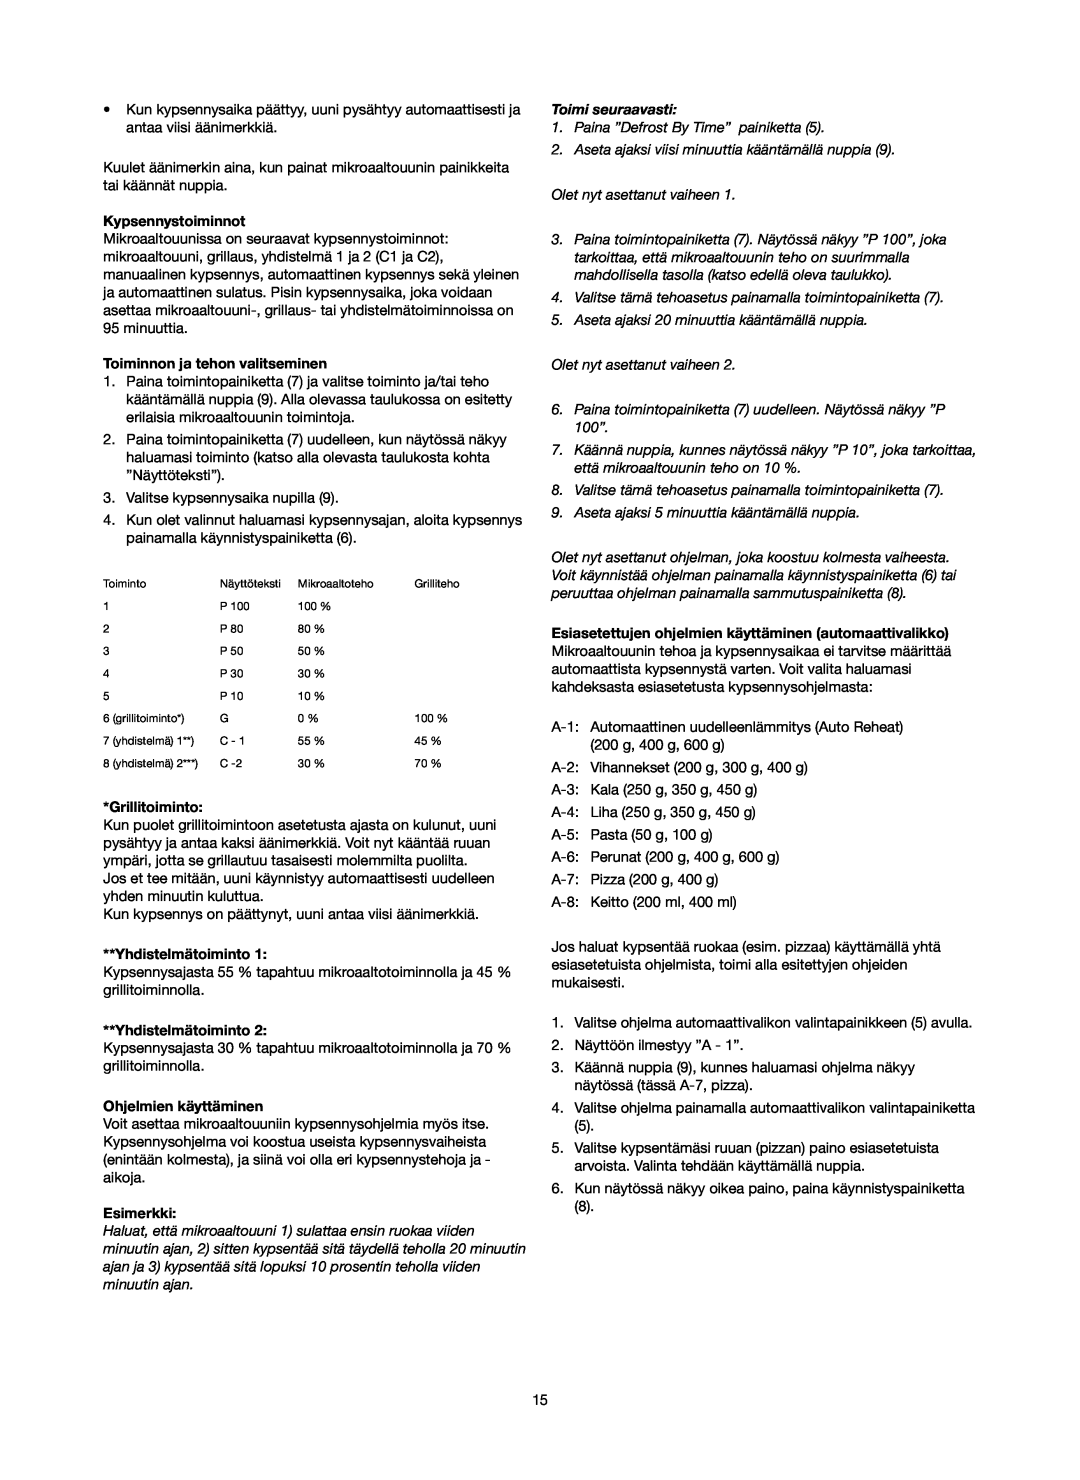 Melissa 753-089 manual Kypsennystoiminnot, Toiminnon ja tehon valitseminen, Grillitoiminto, Yhdistelmätoiminto, Esimerkki 